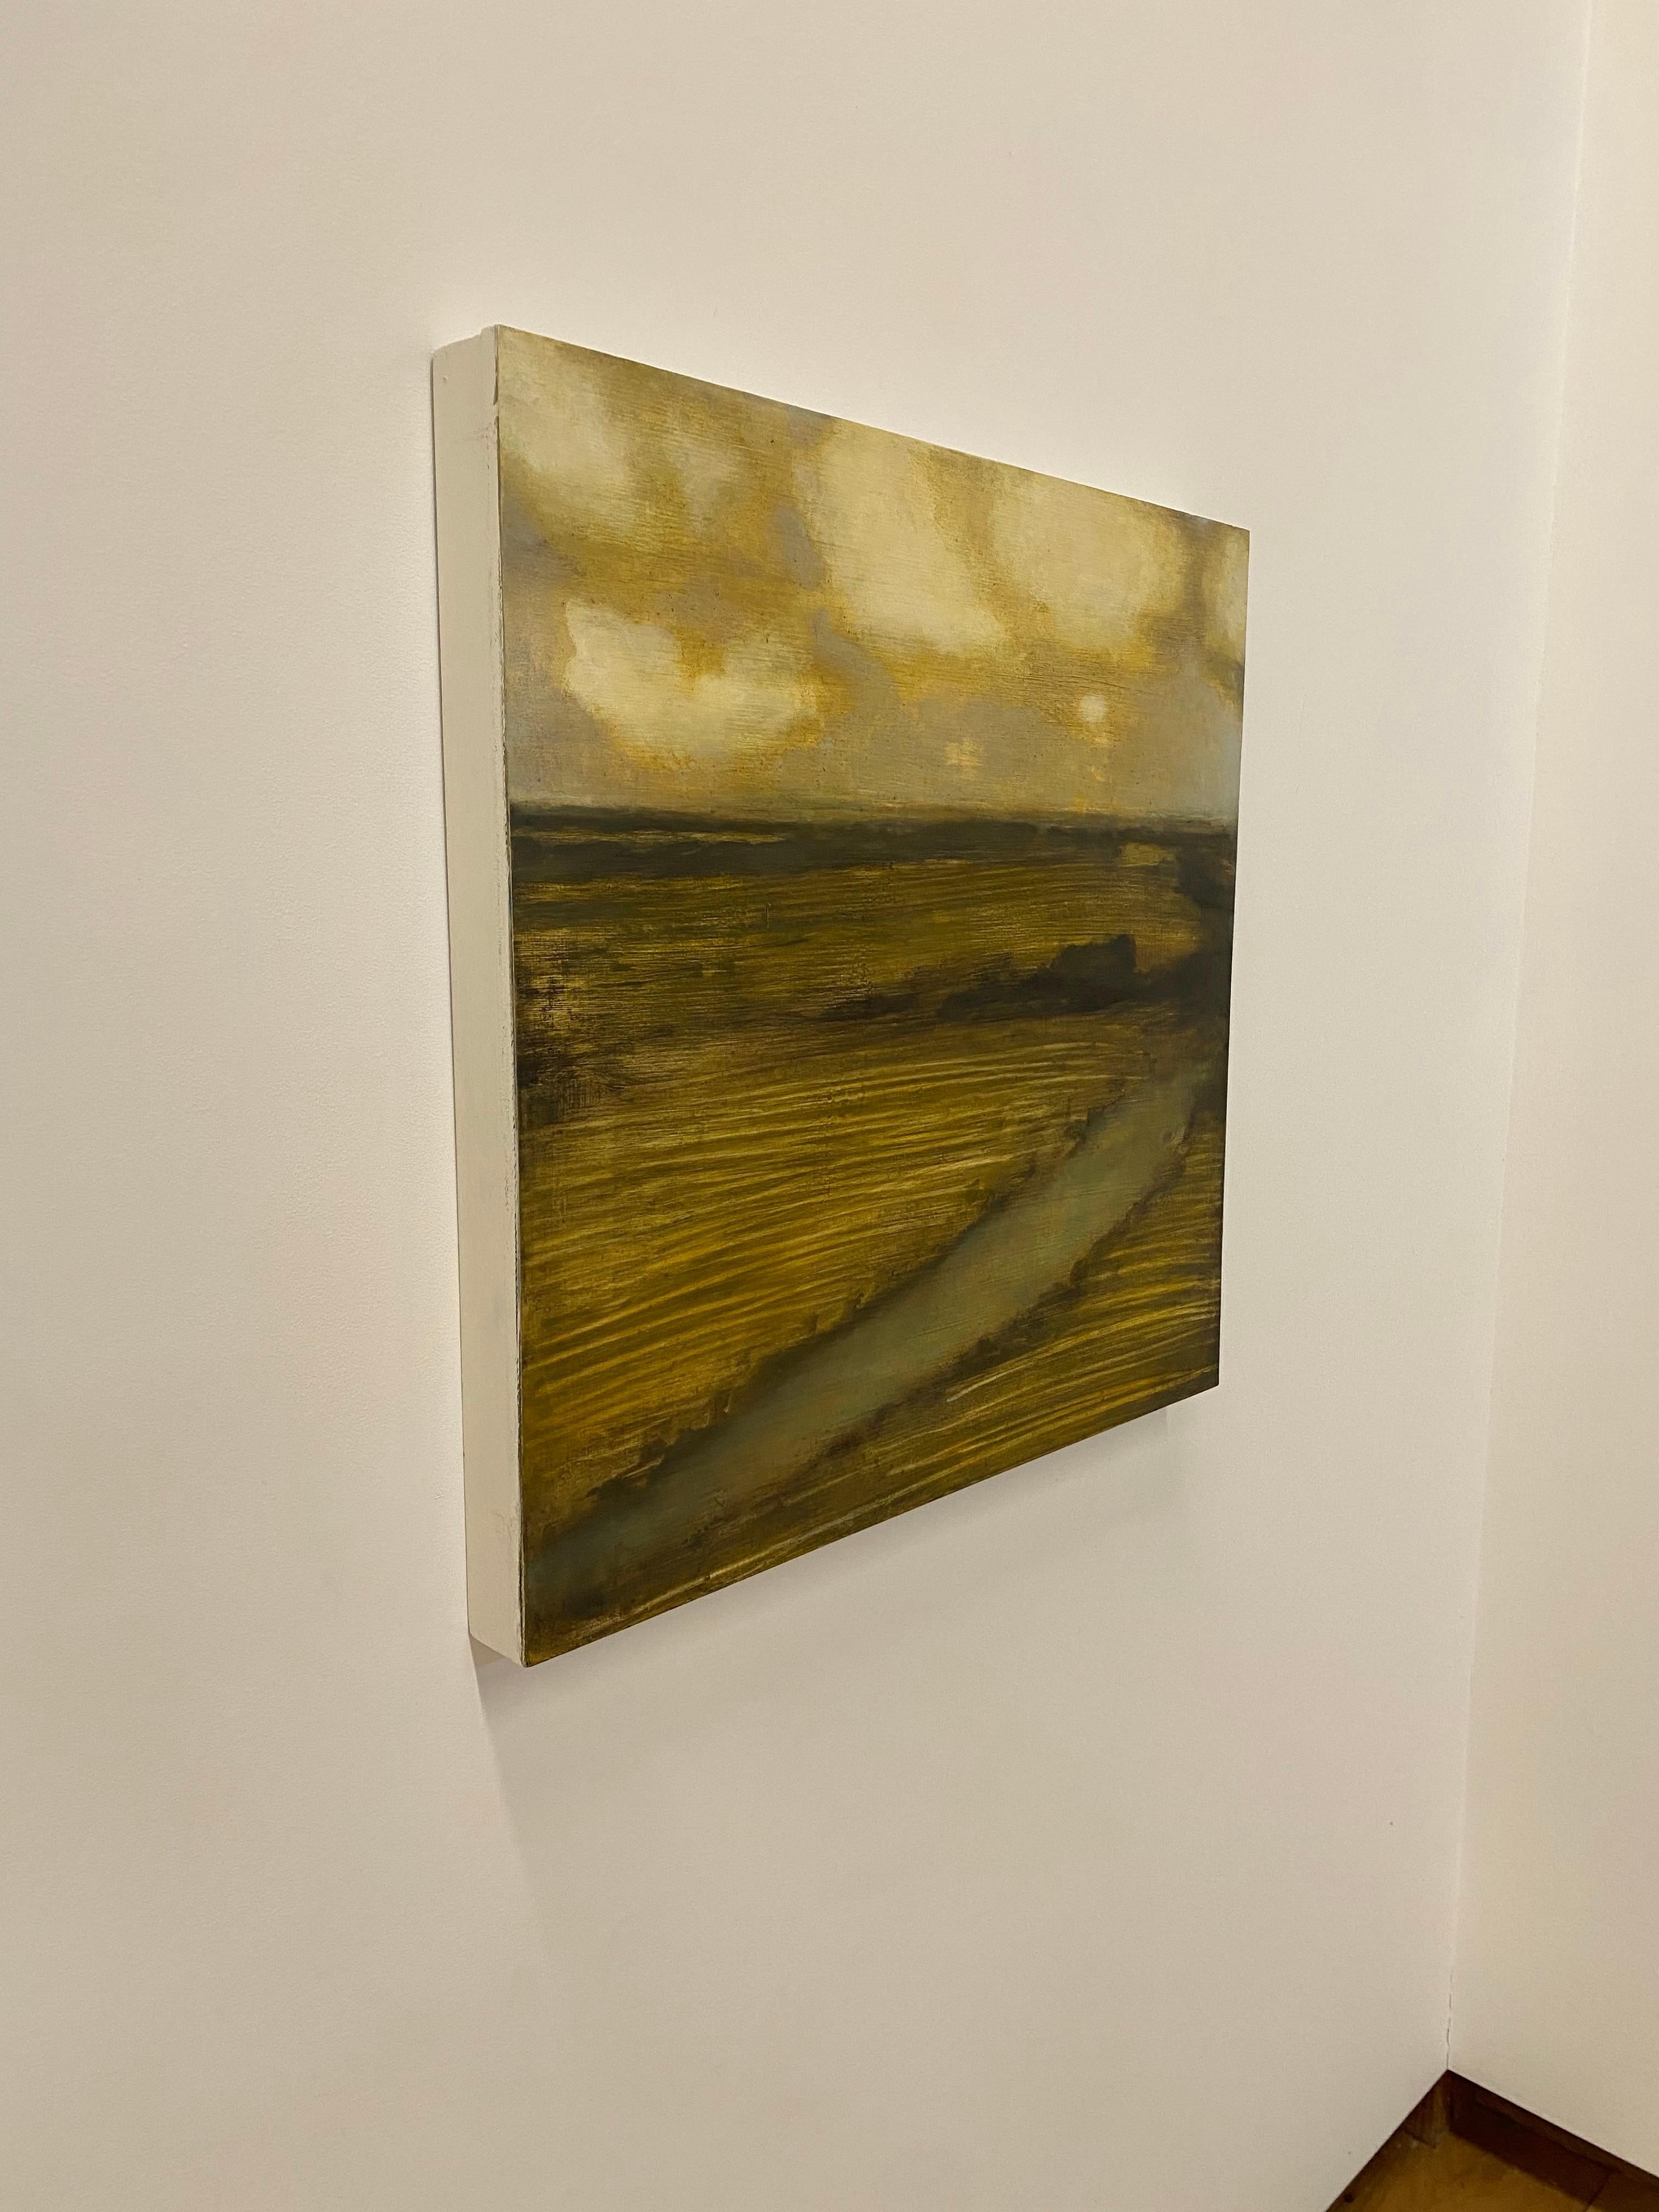 Peinture de terrain avec ruisseau, paysage, nuages dorés et crème sur terrain brun - Contemporain Painting par David Konigsberg